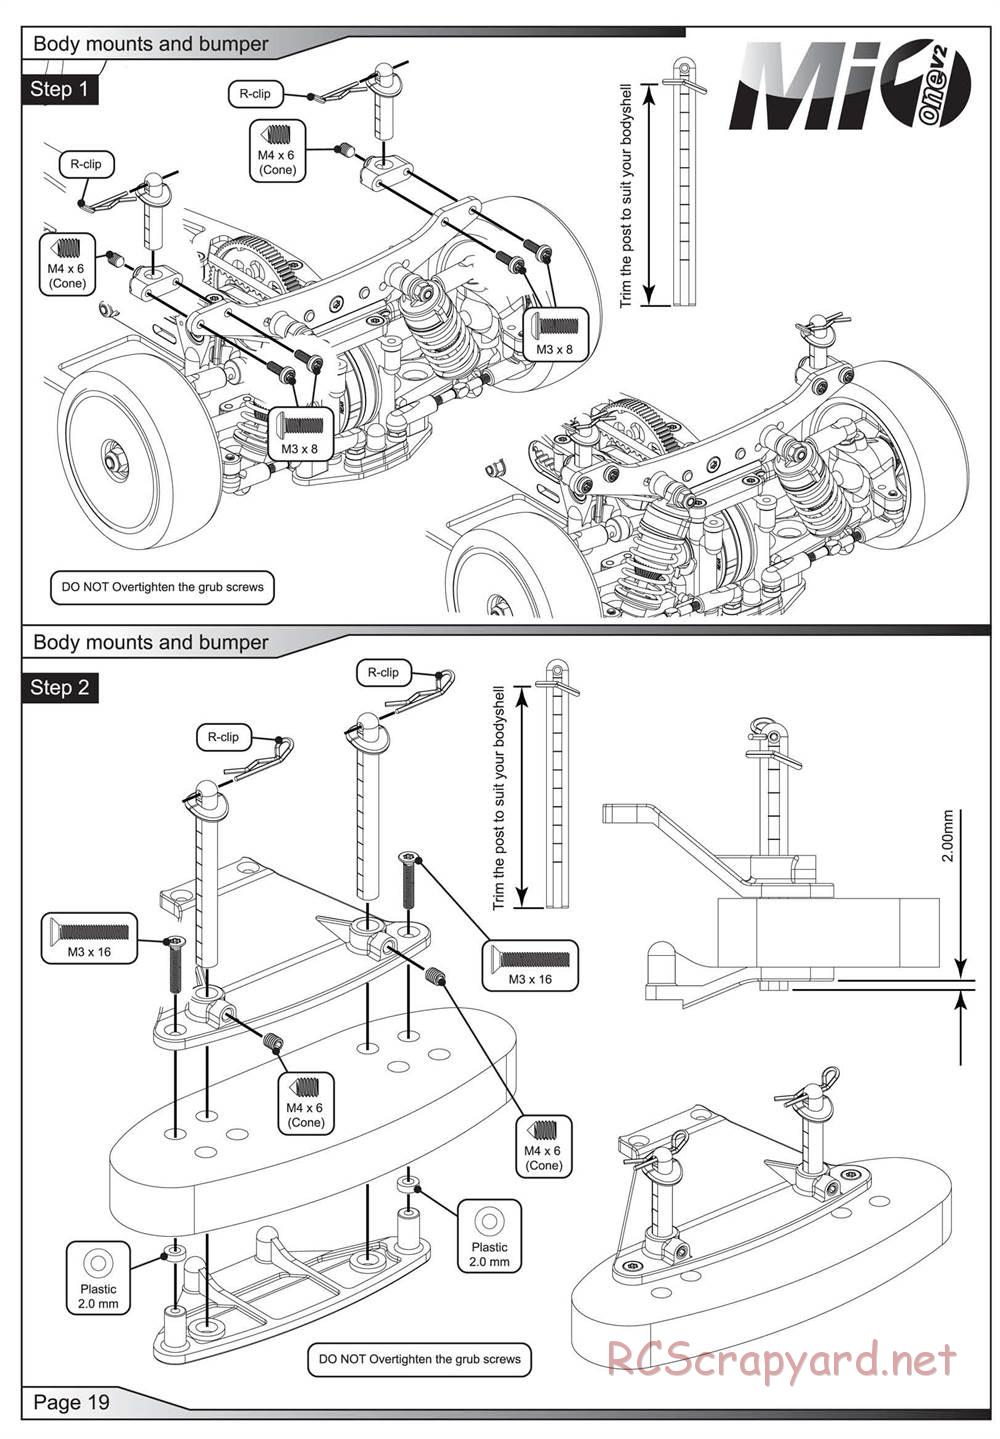 Schumacher - Mi1v2 - Manual - Page 20